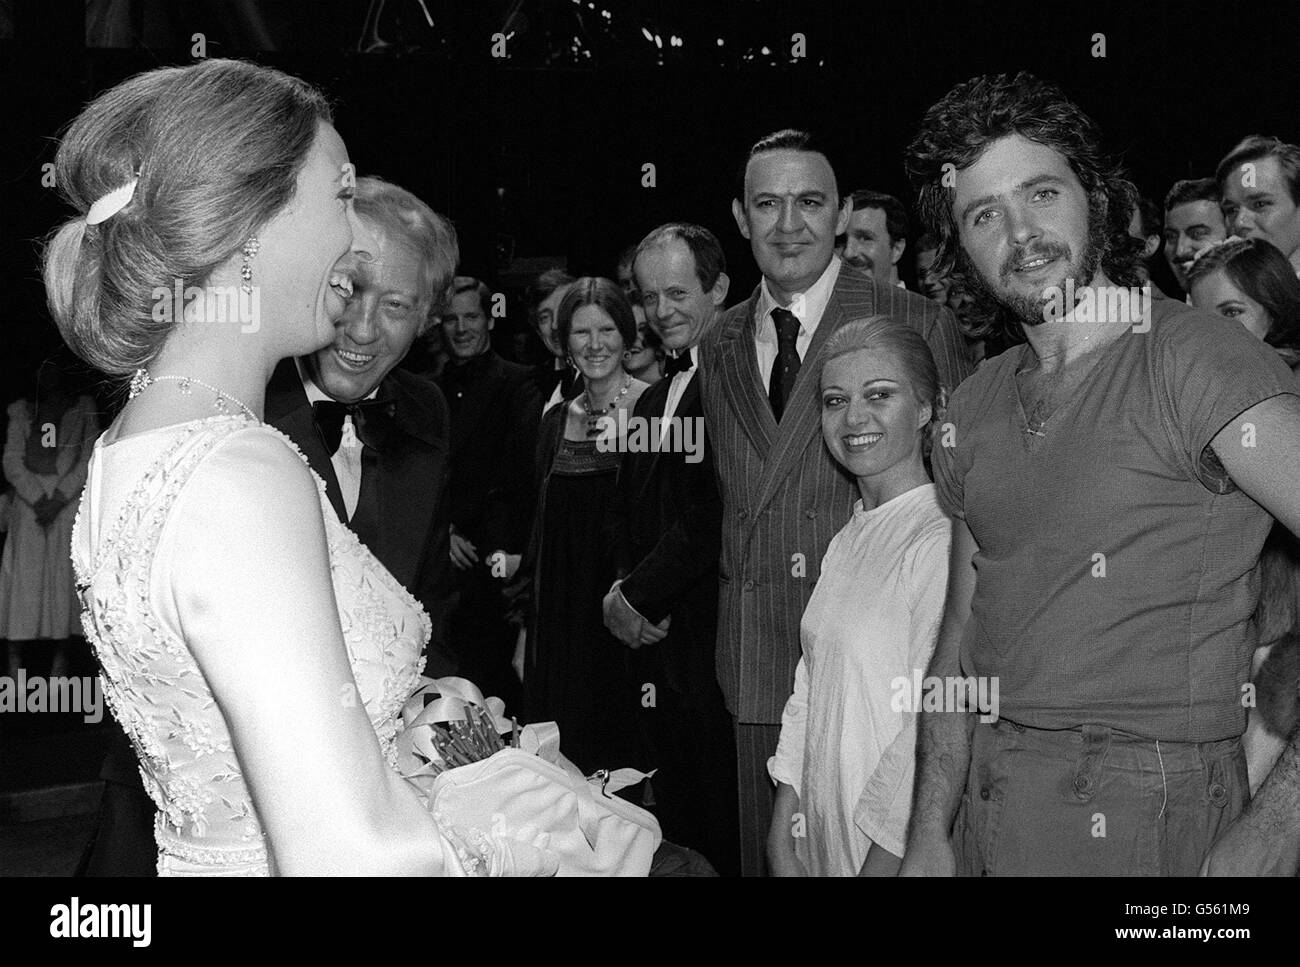 La princesa Anne comparte una broma con los actores David Essex (R), Elaine Paige y Joss Ackland, después del estreno benéfico de evita, el musical sobre Eva Peron, en el Prince Edward Theatre de Londres. Foto de stock